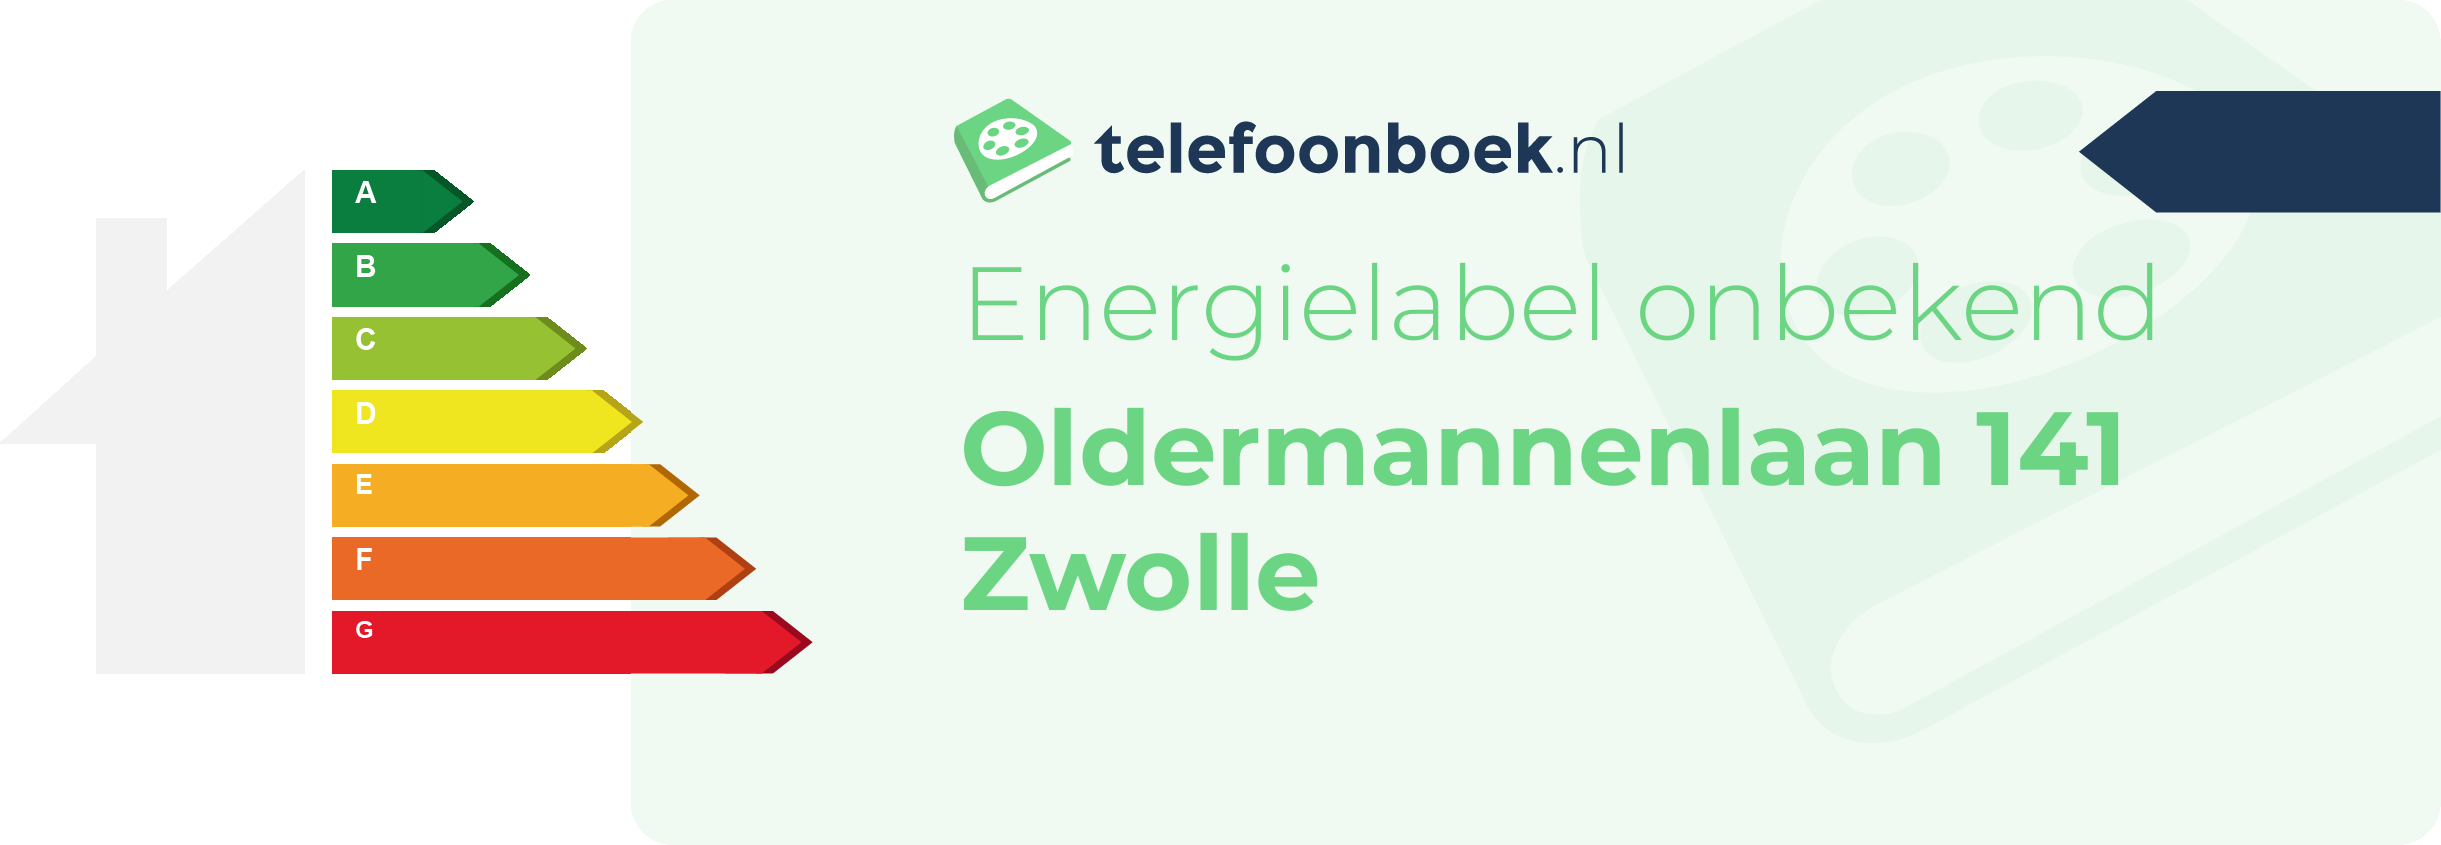 Energielabel Oldermannenlaan 141 Zwolle